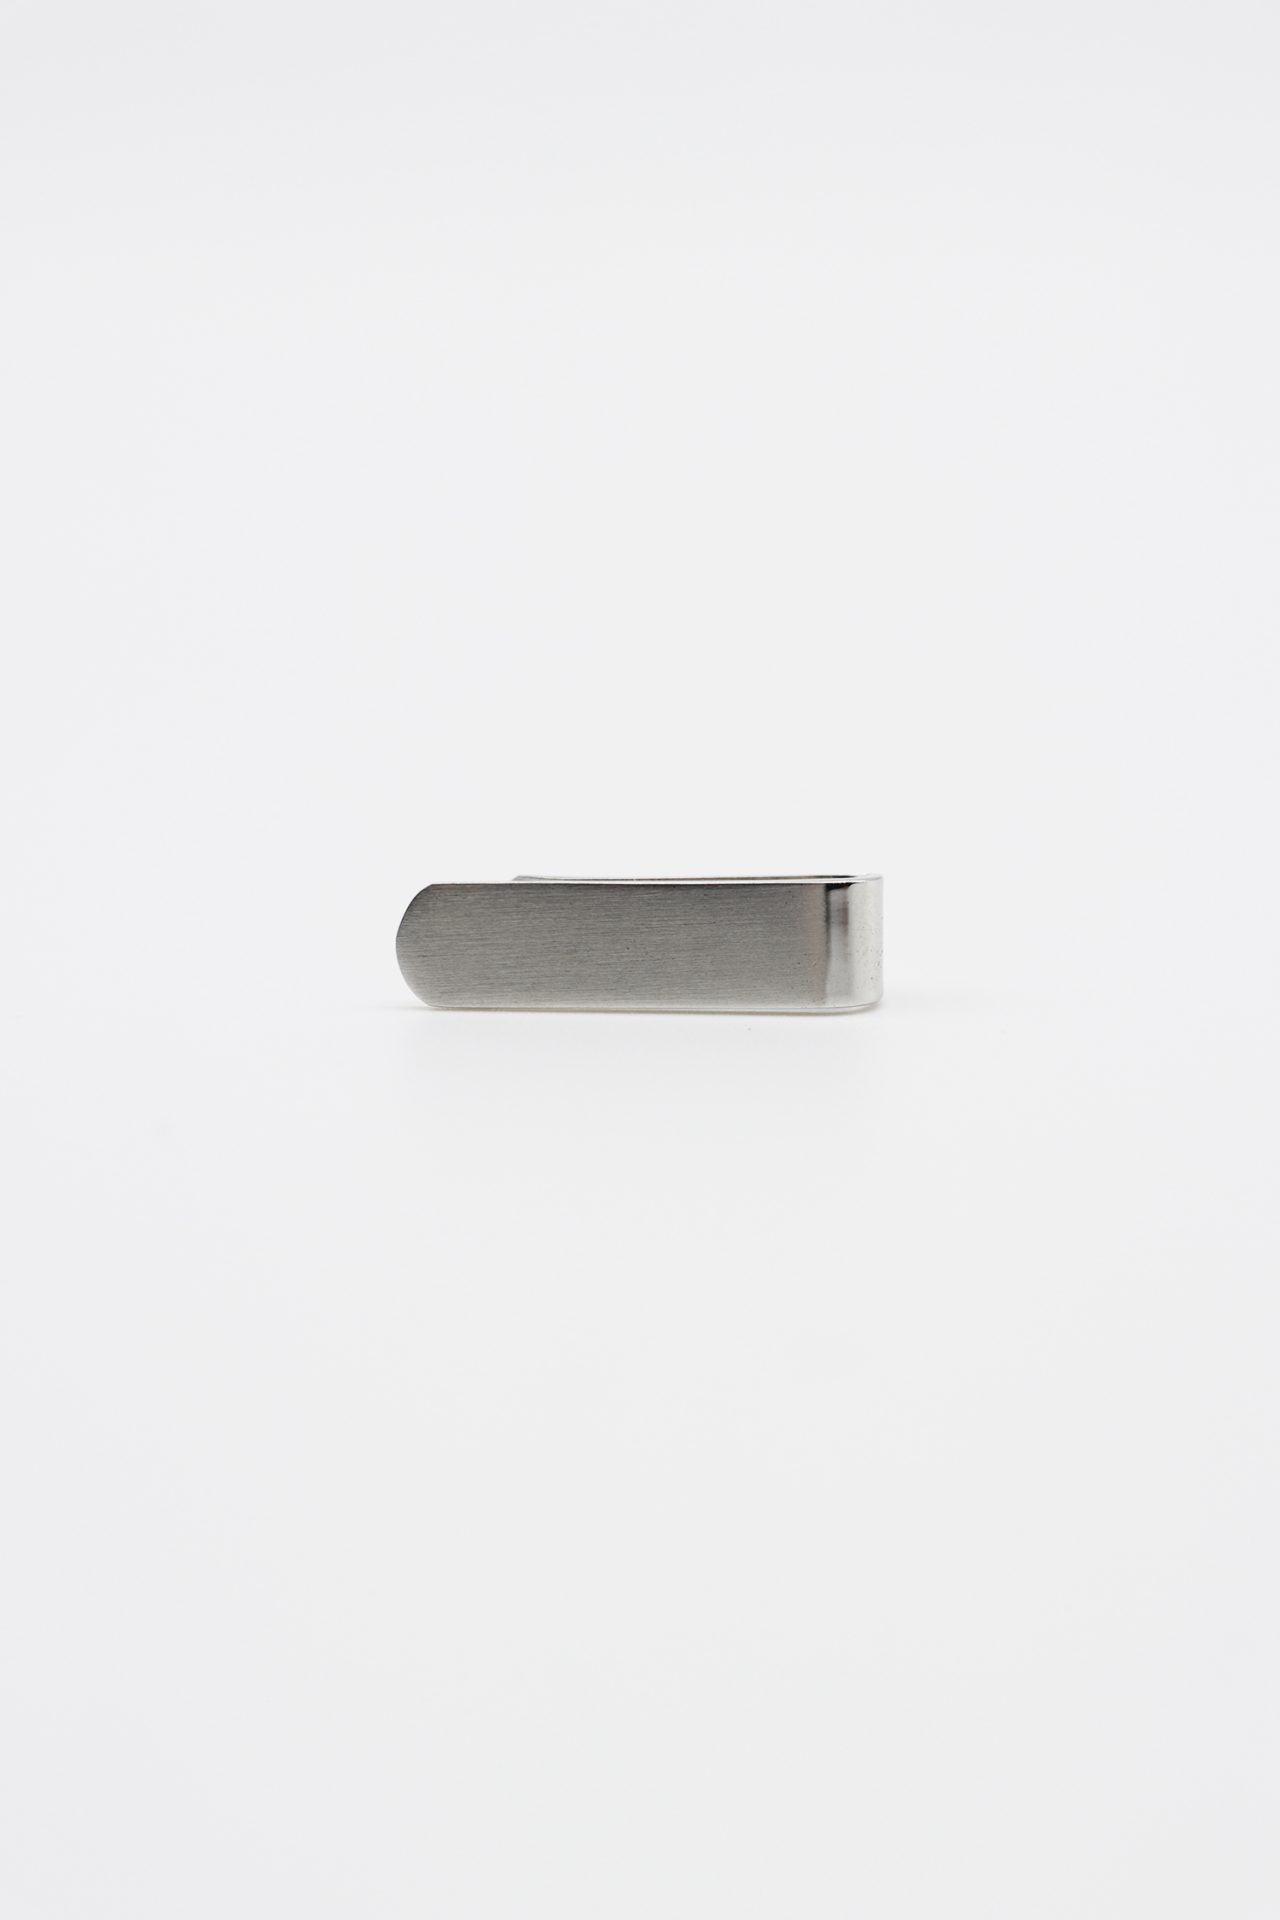 silver mini tie clip dgrie